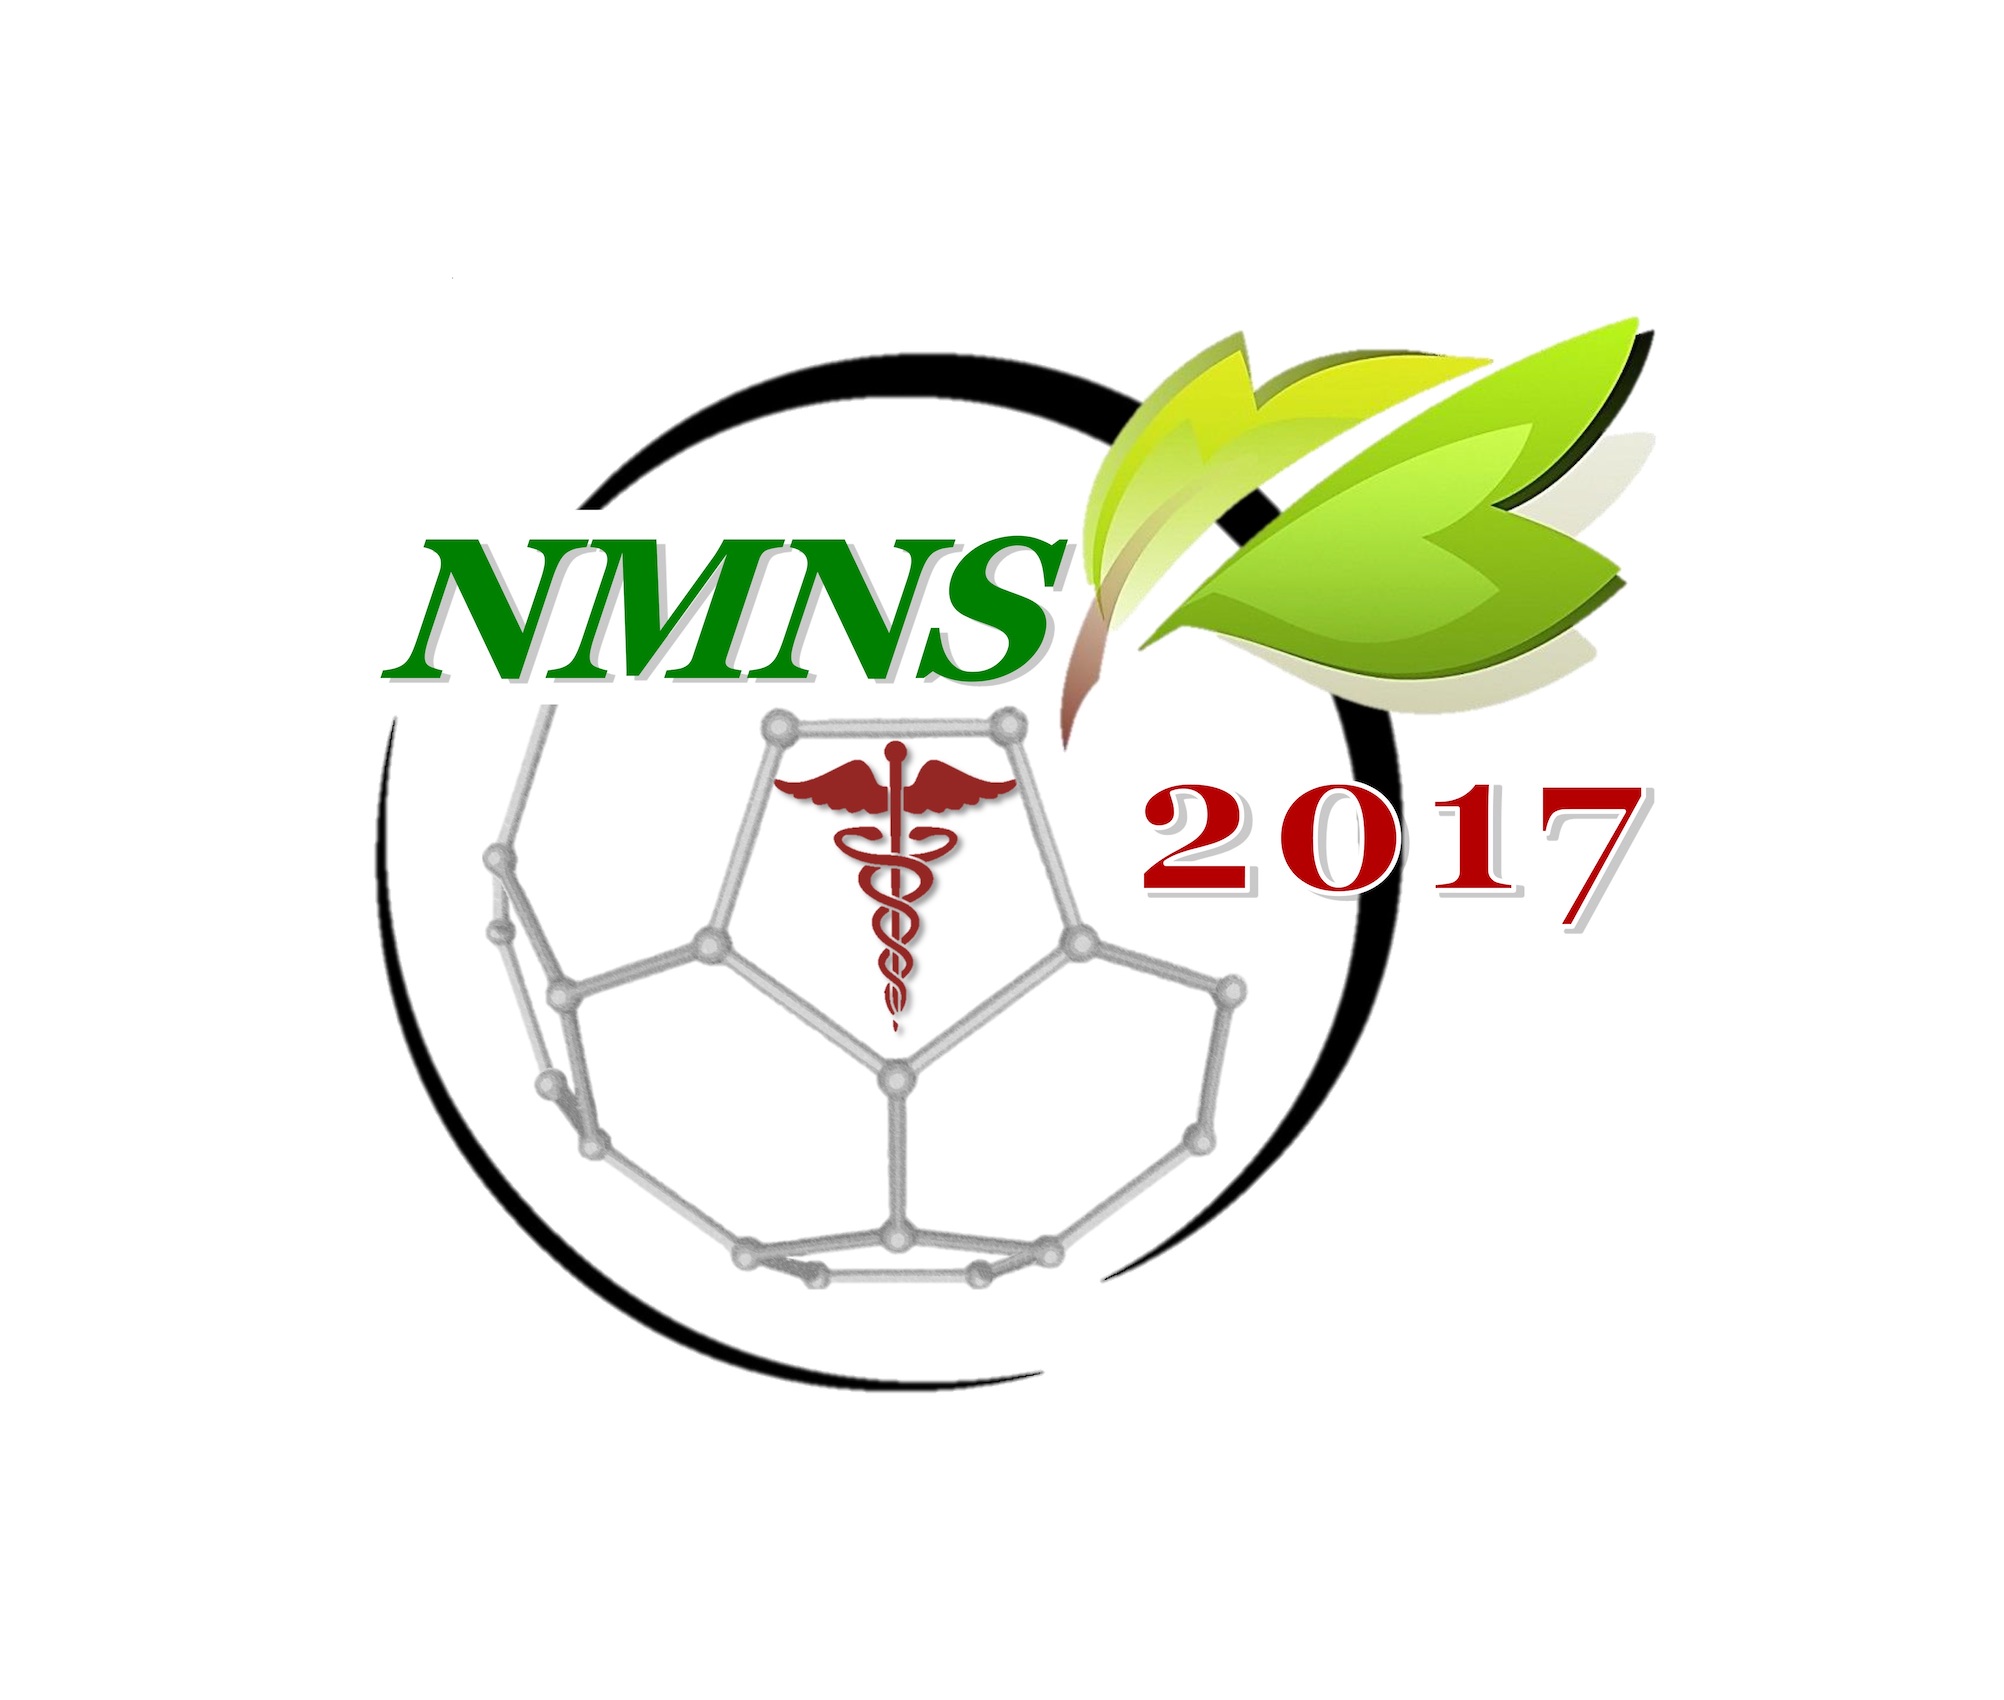 2nd International Nanomedicine and Nanotechnology Conference (NMNS2017)